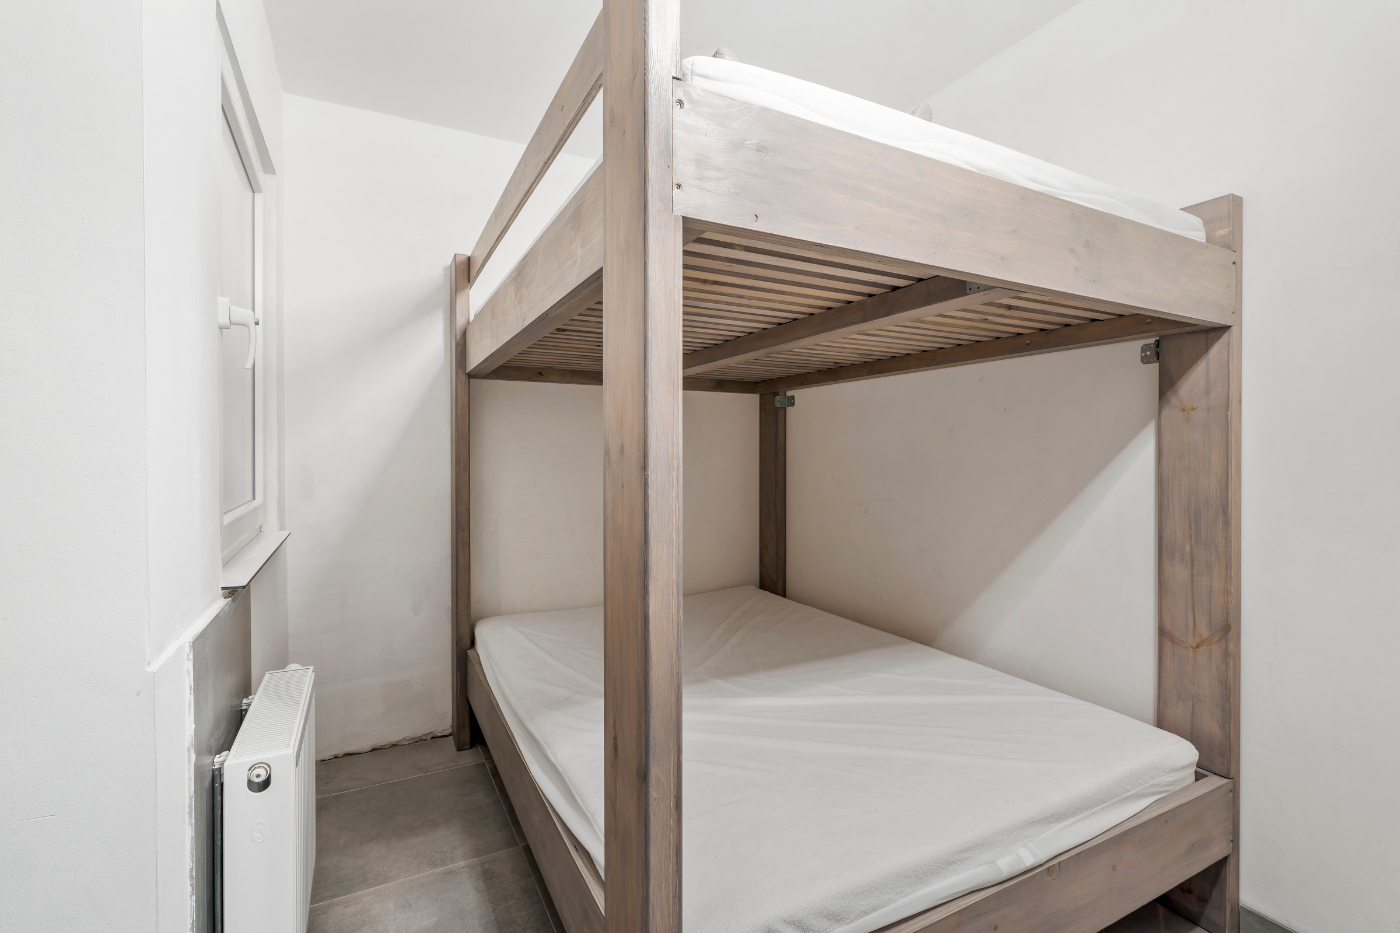 Koksijde-Zeedijk - Gelijkvloers appartement met 3 slaapkamers en frontaal zeezicht inclusief garage - Residentie Le Provence foto 14